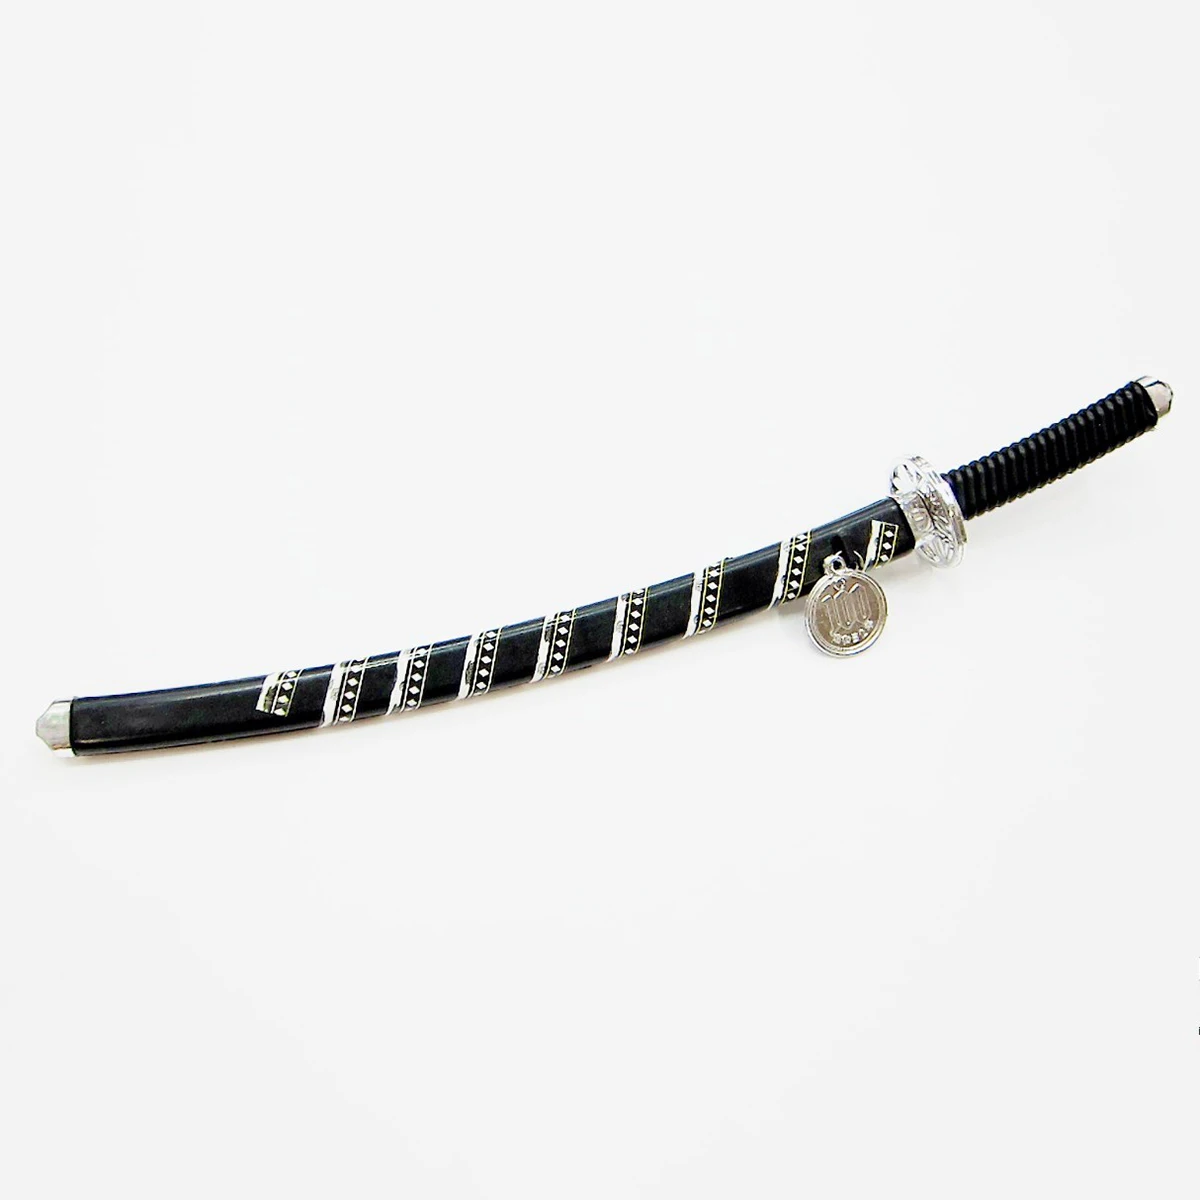 Пластиковая легкая Японская Игрушка "Самурай", меч, детская игрушка, нож, реквизит, черный меч самурая для Хэллоуина, косплей